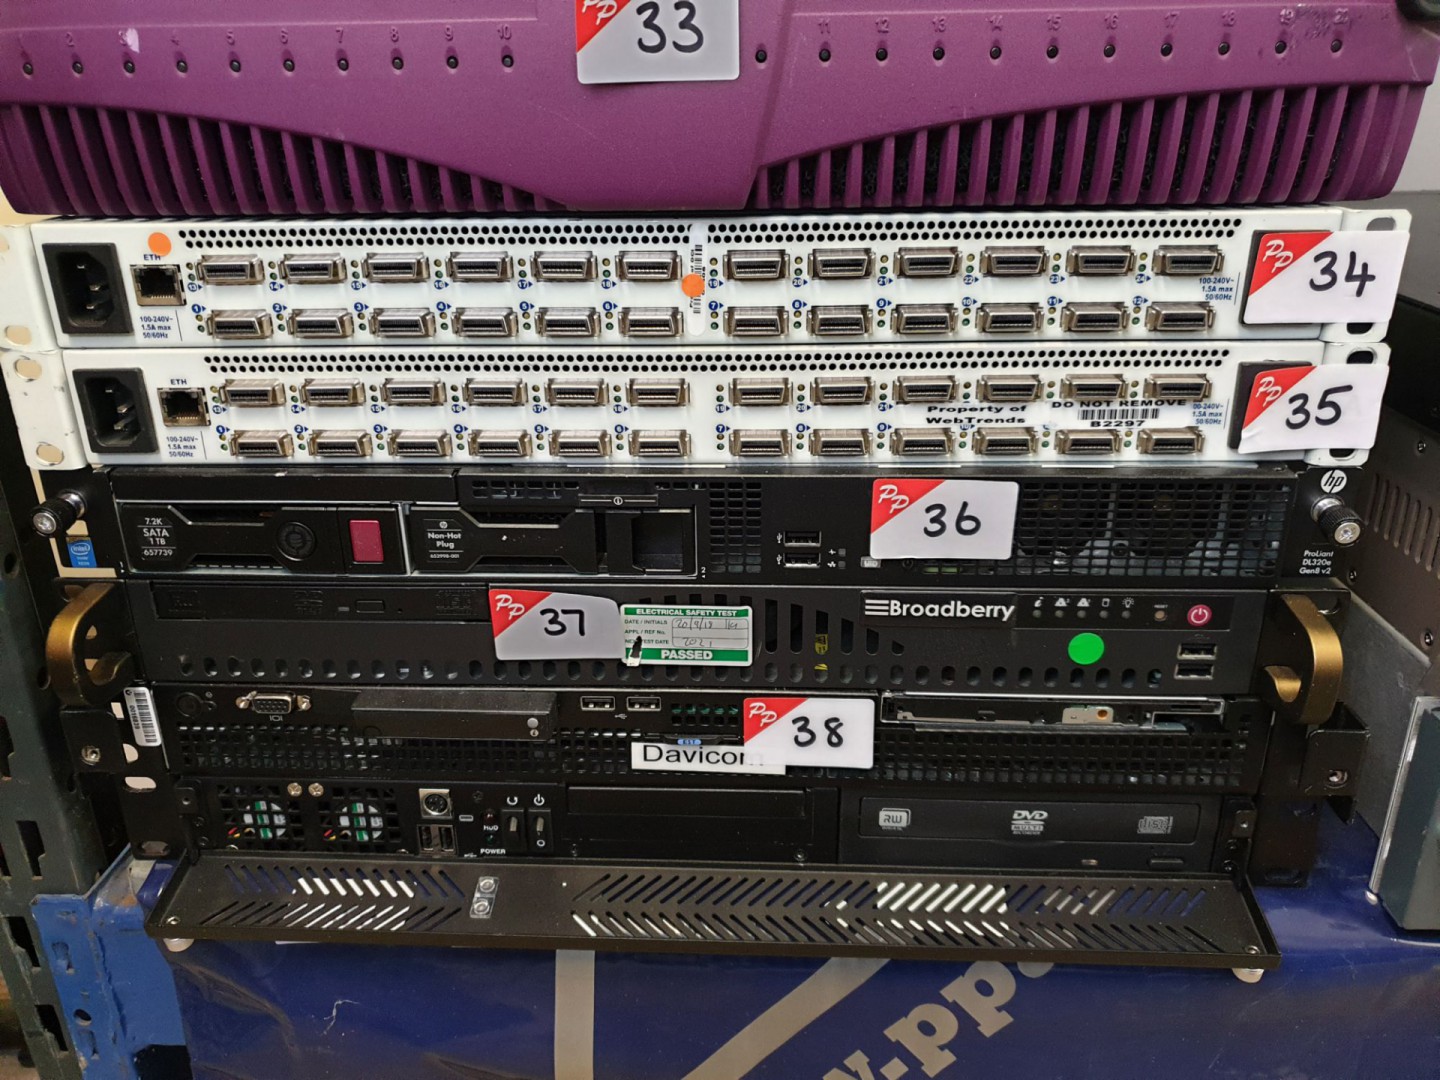 HP Proliant DL320e Gen 8 V2 rack server - Please N...